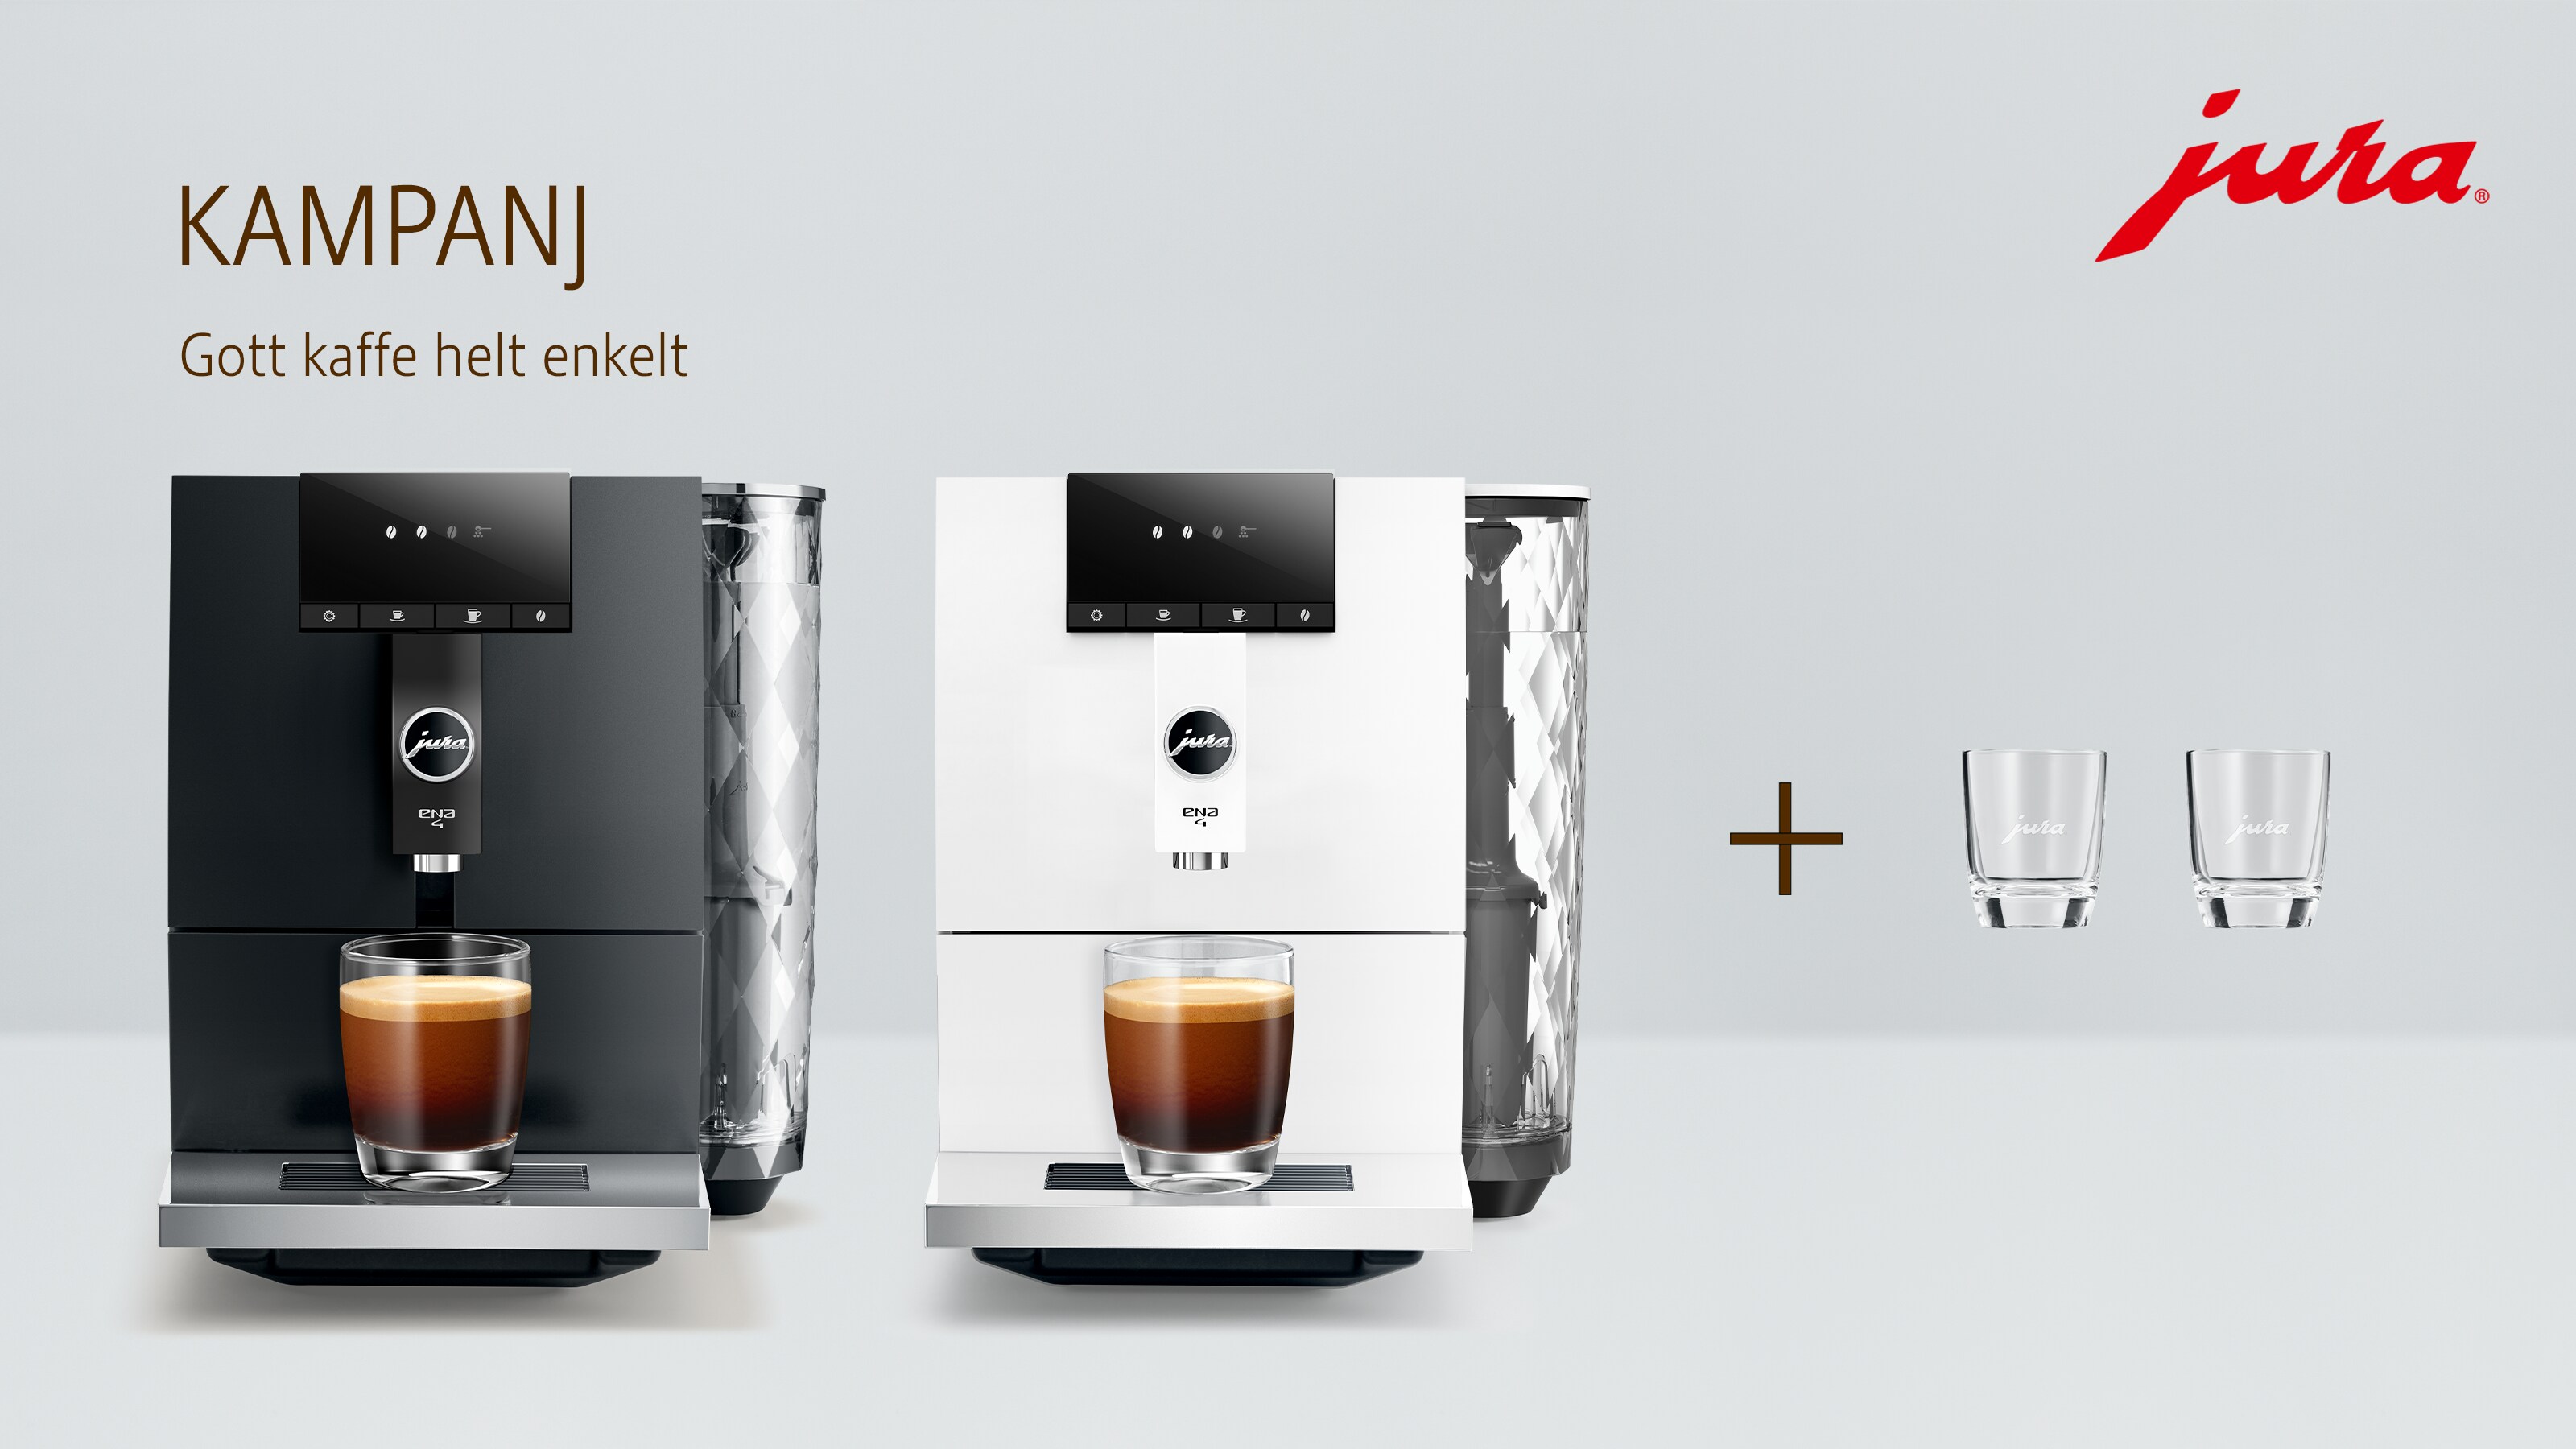 Två Jura ENA 4 kaffemaskiner och kampanjtext